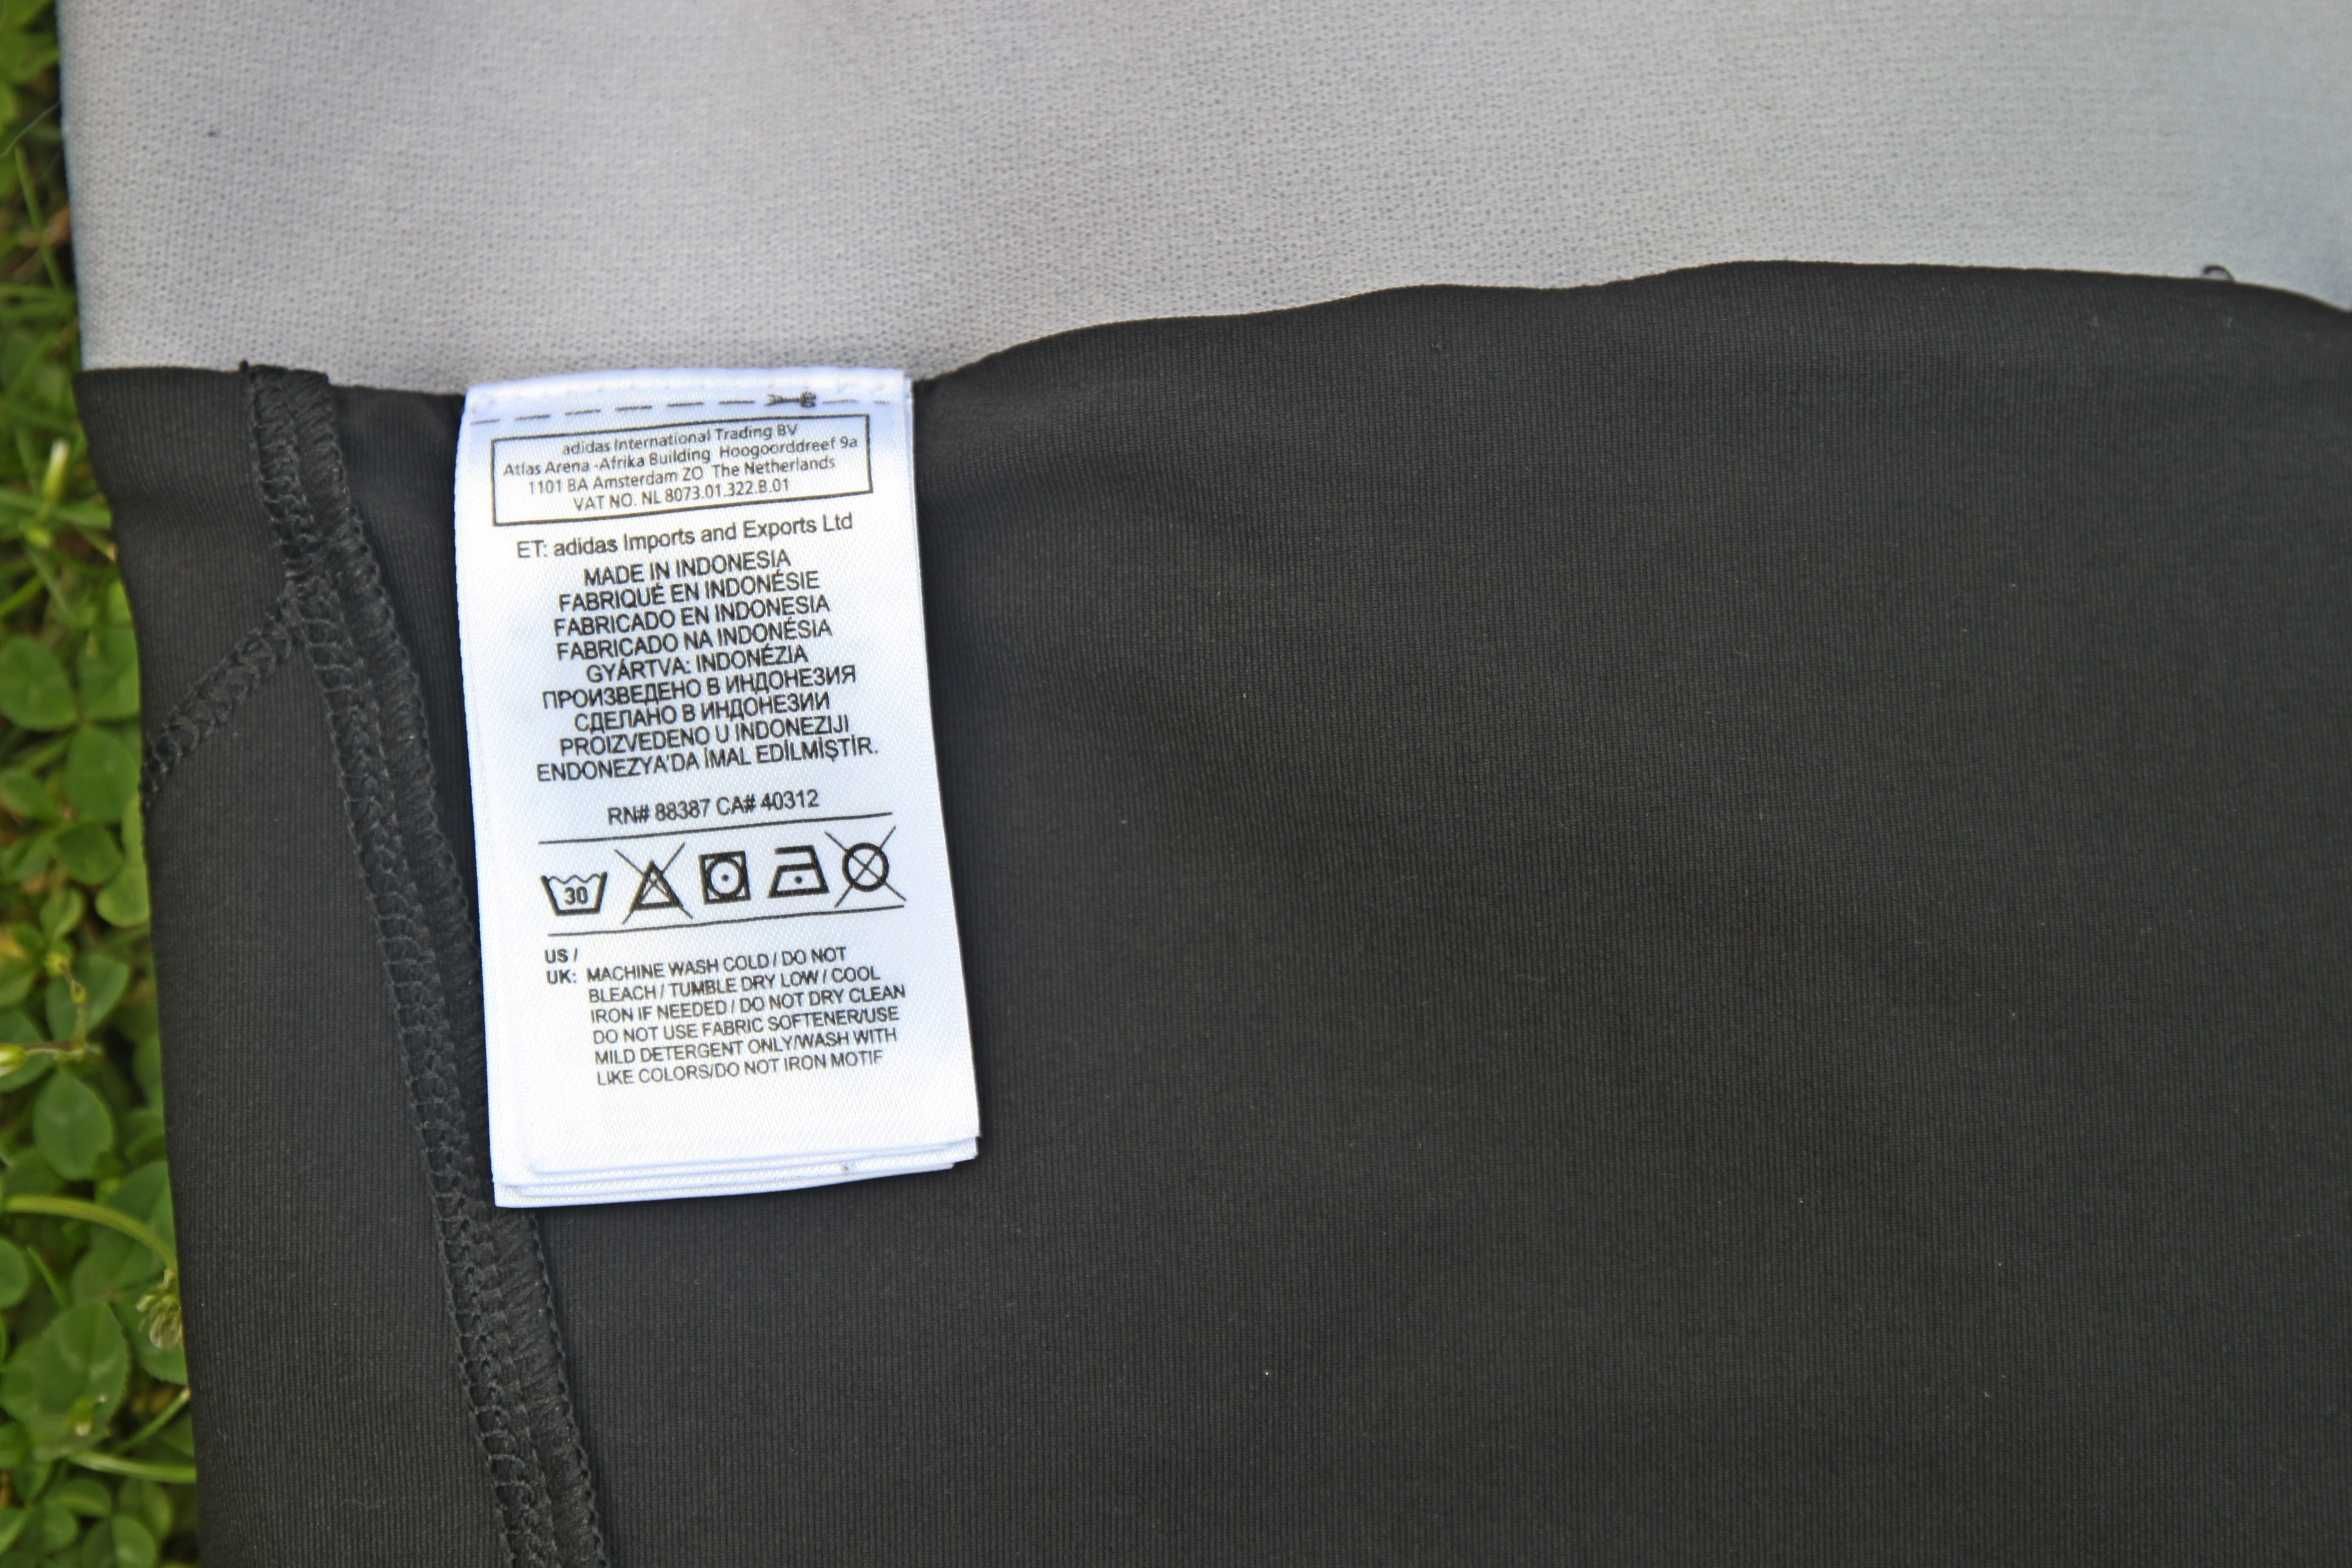 Теннисная юбка с шортами с карманами для мячей Adidas, р.M